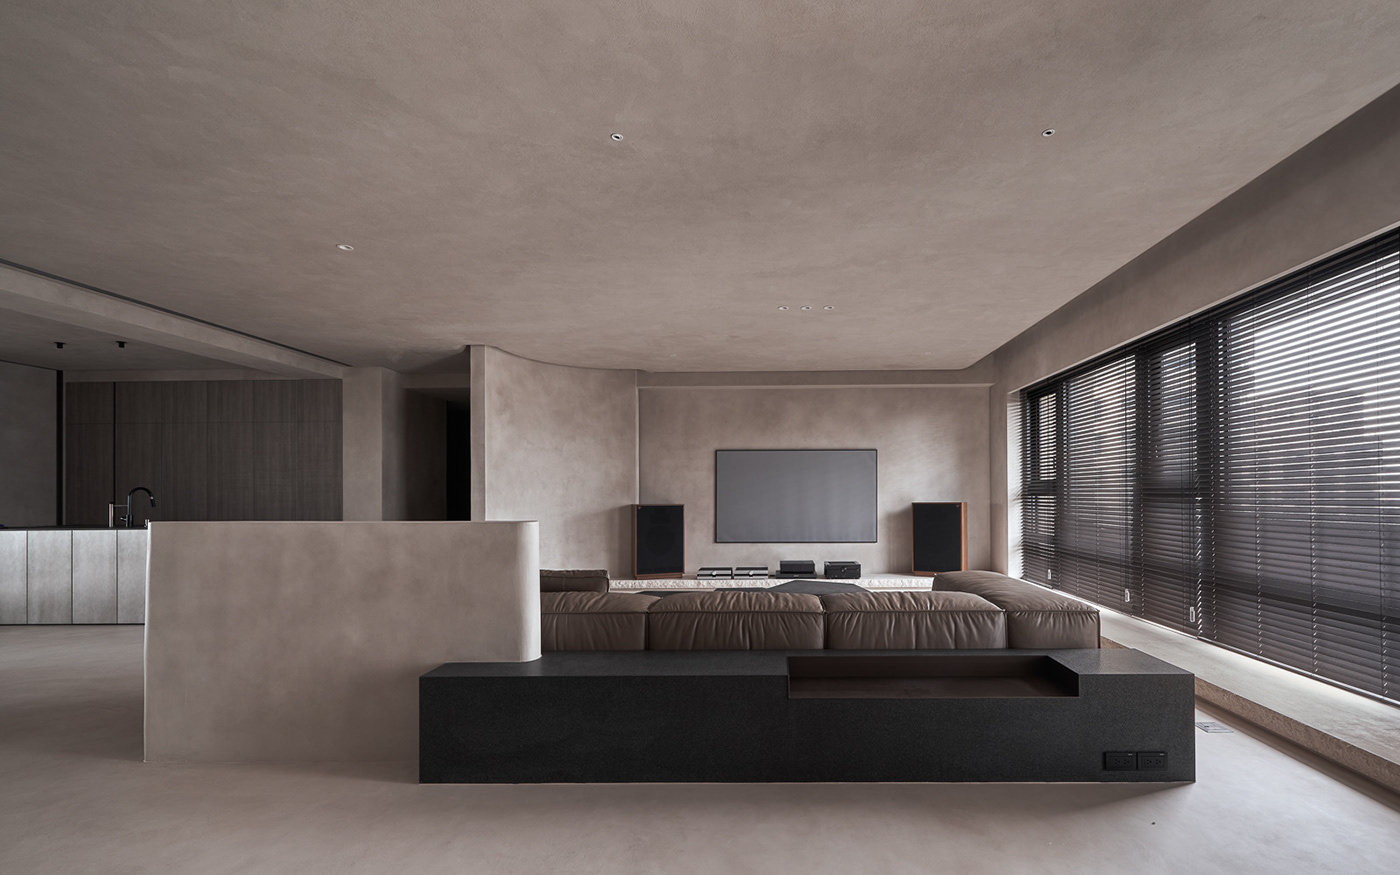 architectural design architecture artwork Interior interior design  minimal minimaldesign Minimalism minimalist modern